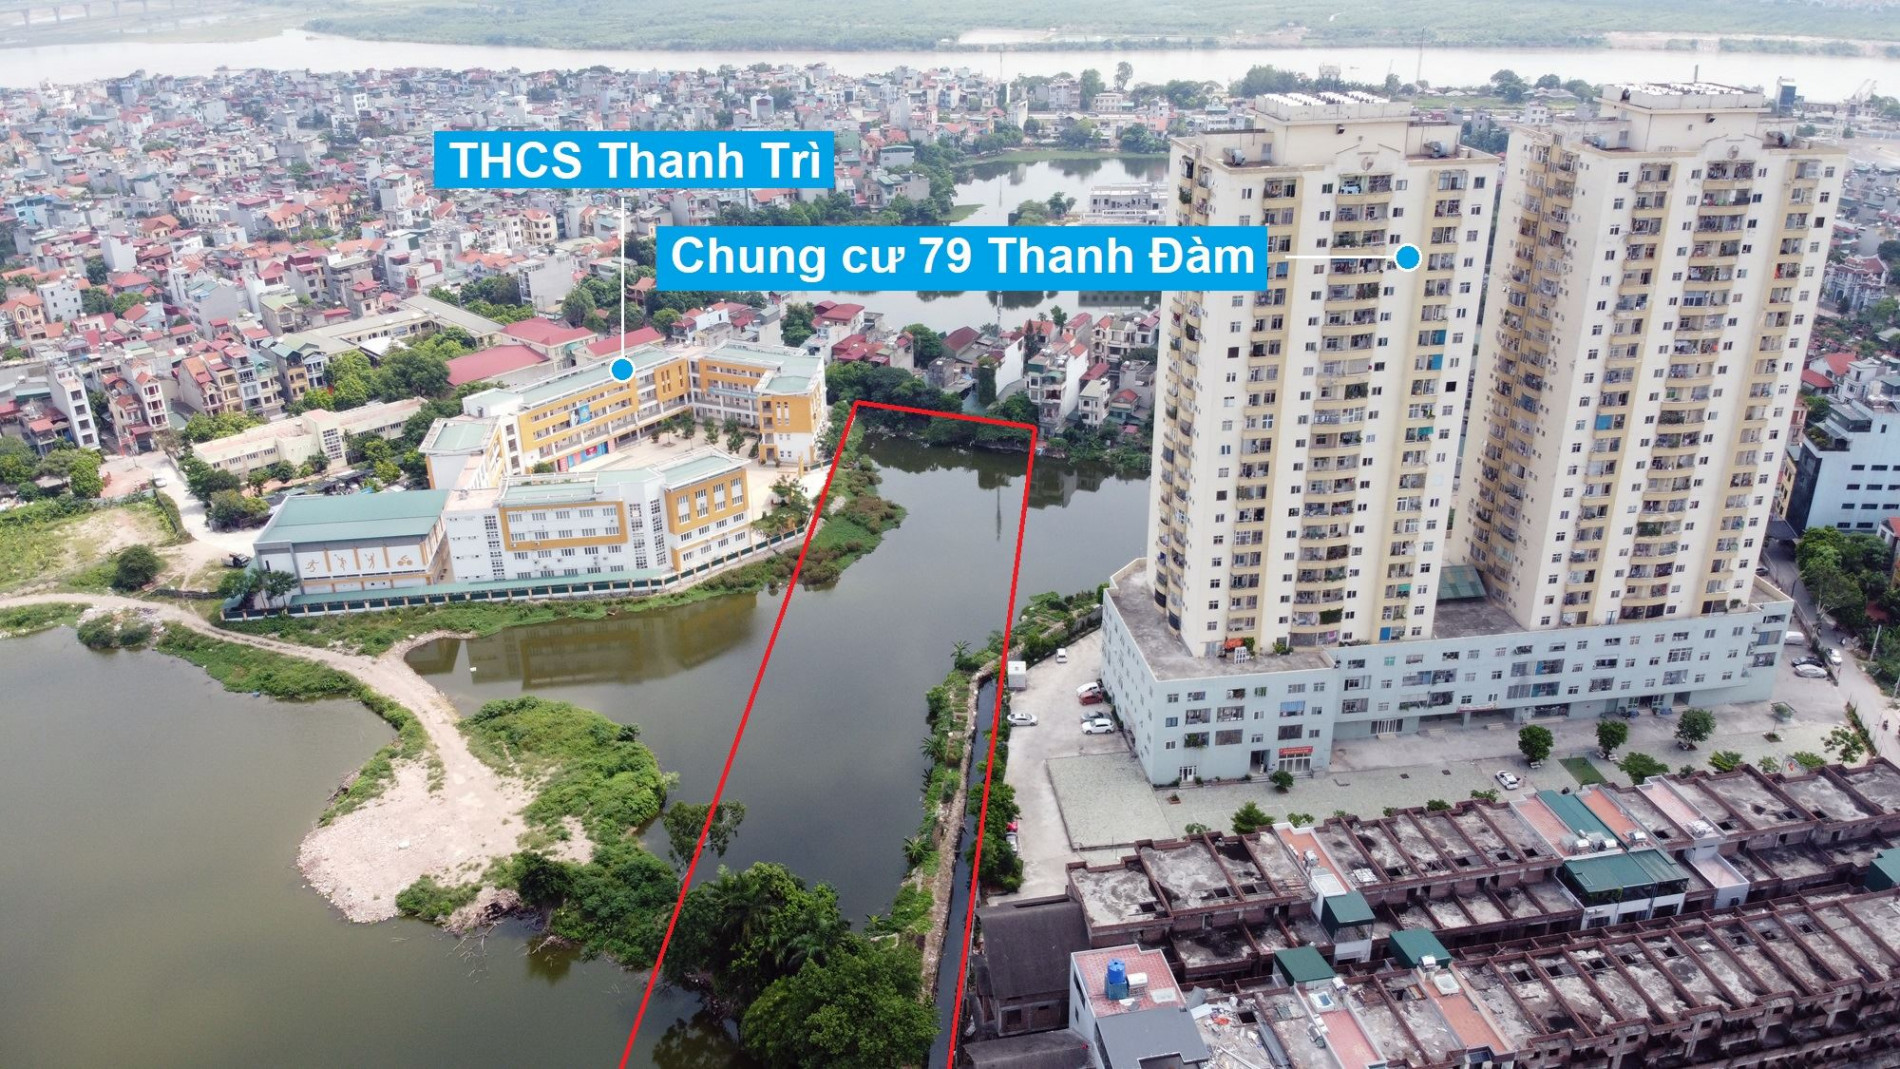 Sắp lấp nhiều hồ để làm nhà, làm đường ở quận Hoàng Mai, Hà Nội (phần 2)